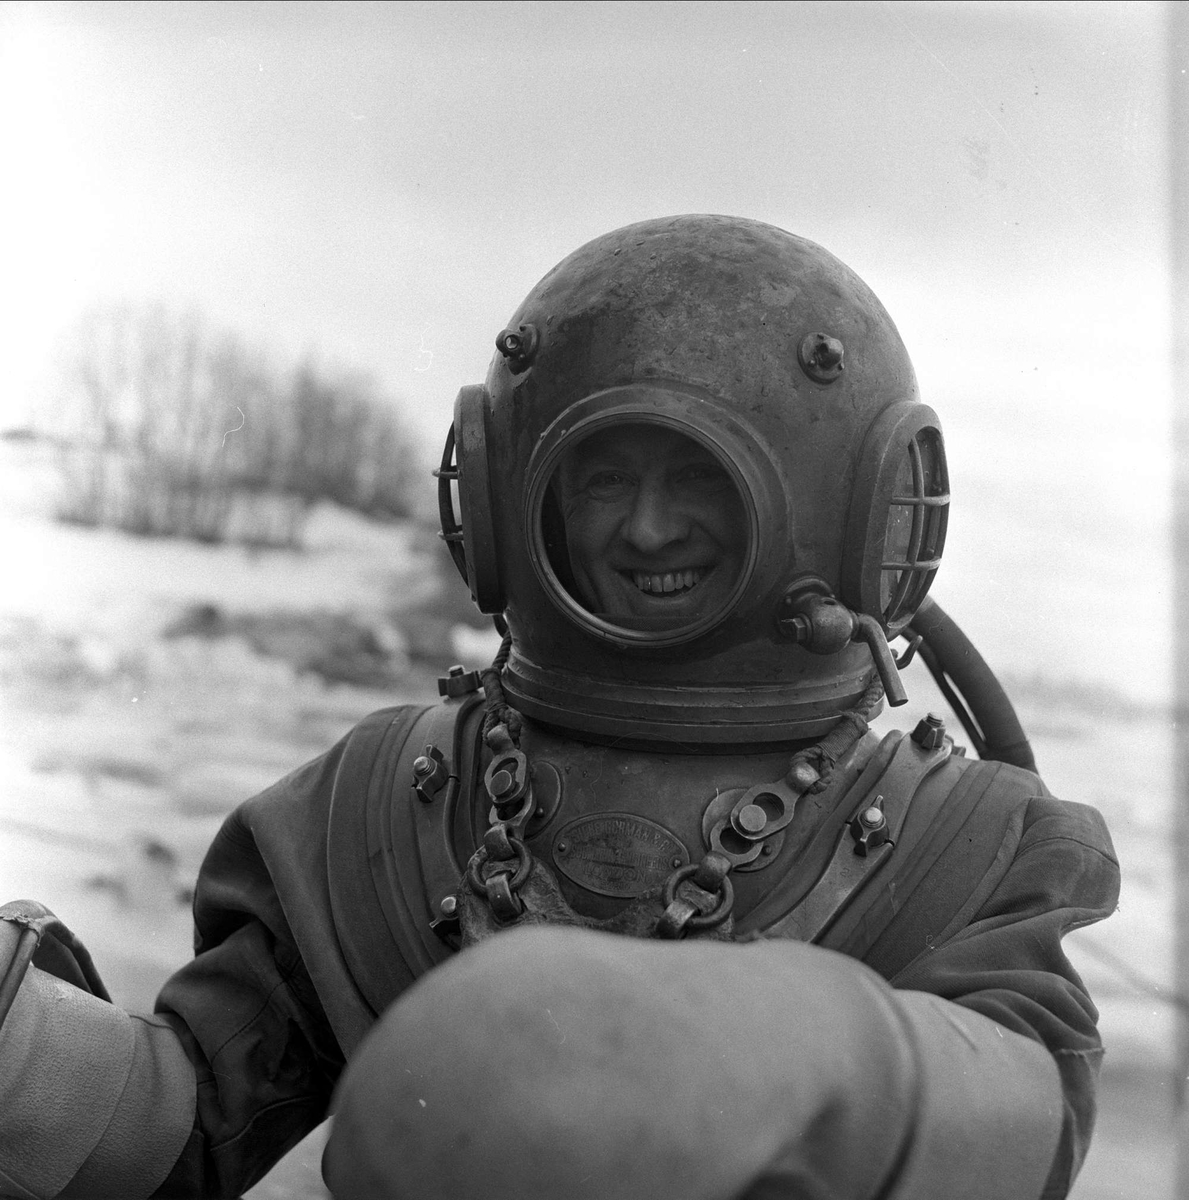 Trelleborg Gummi legger ut slange ved Sarpsborg, mars, 1959. Mann i dykkerdrakt.